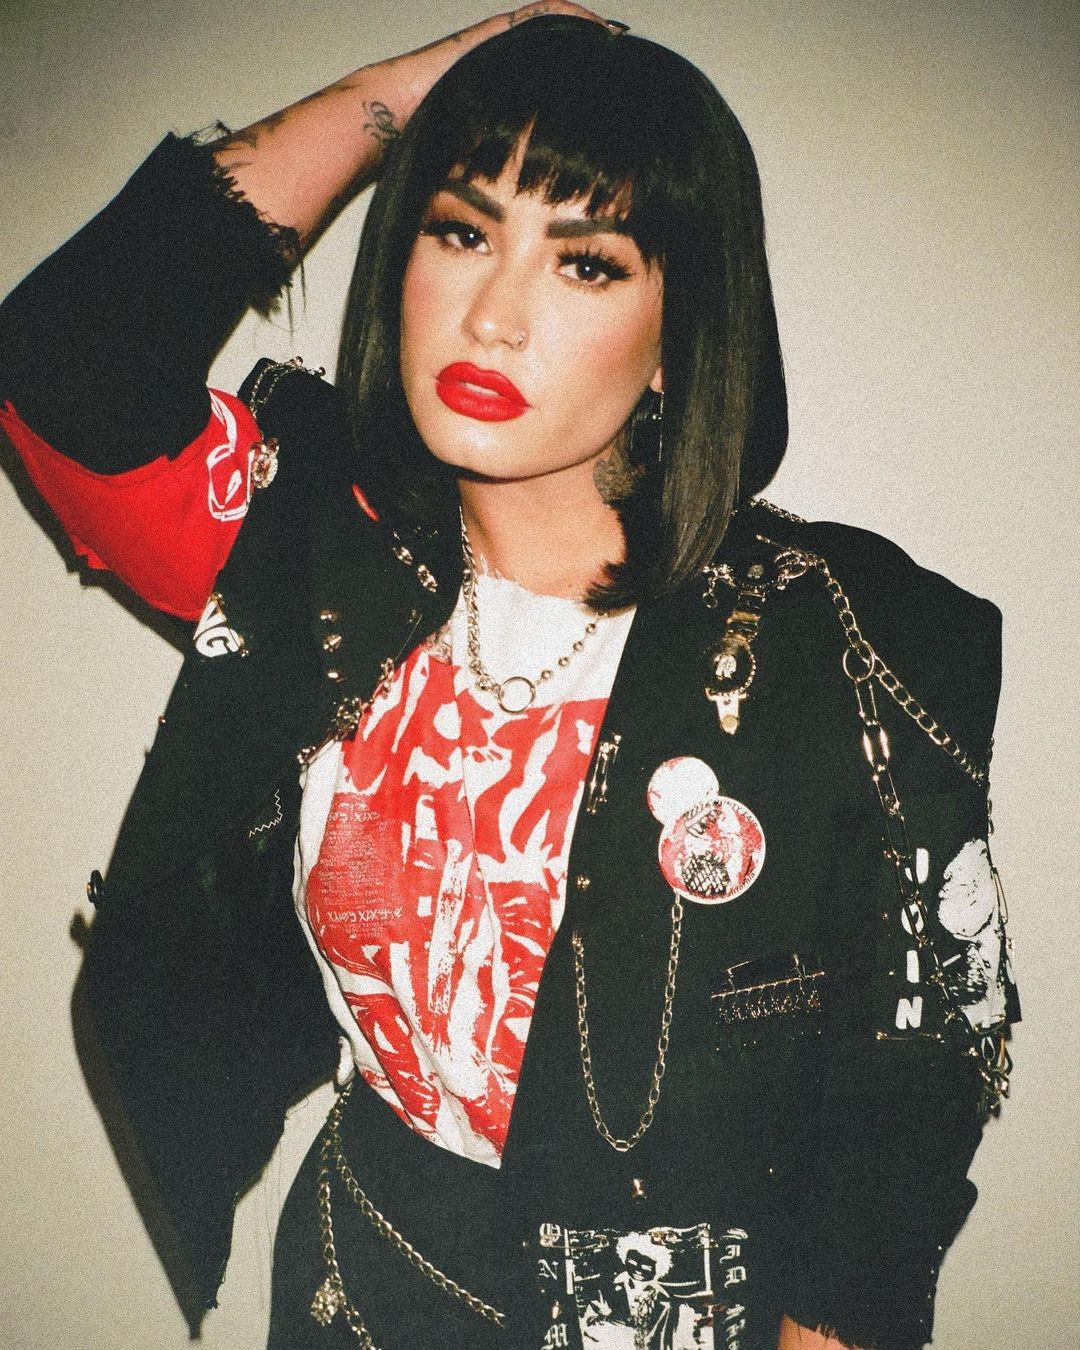 Demi Lovato explicou motivos que a levaram a adotar pronomes femininos novamente (Foto: Reprodução/Instagram)